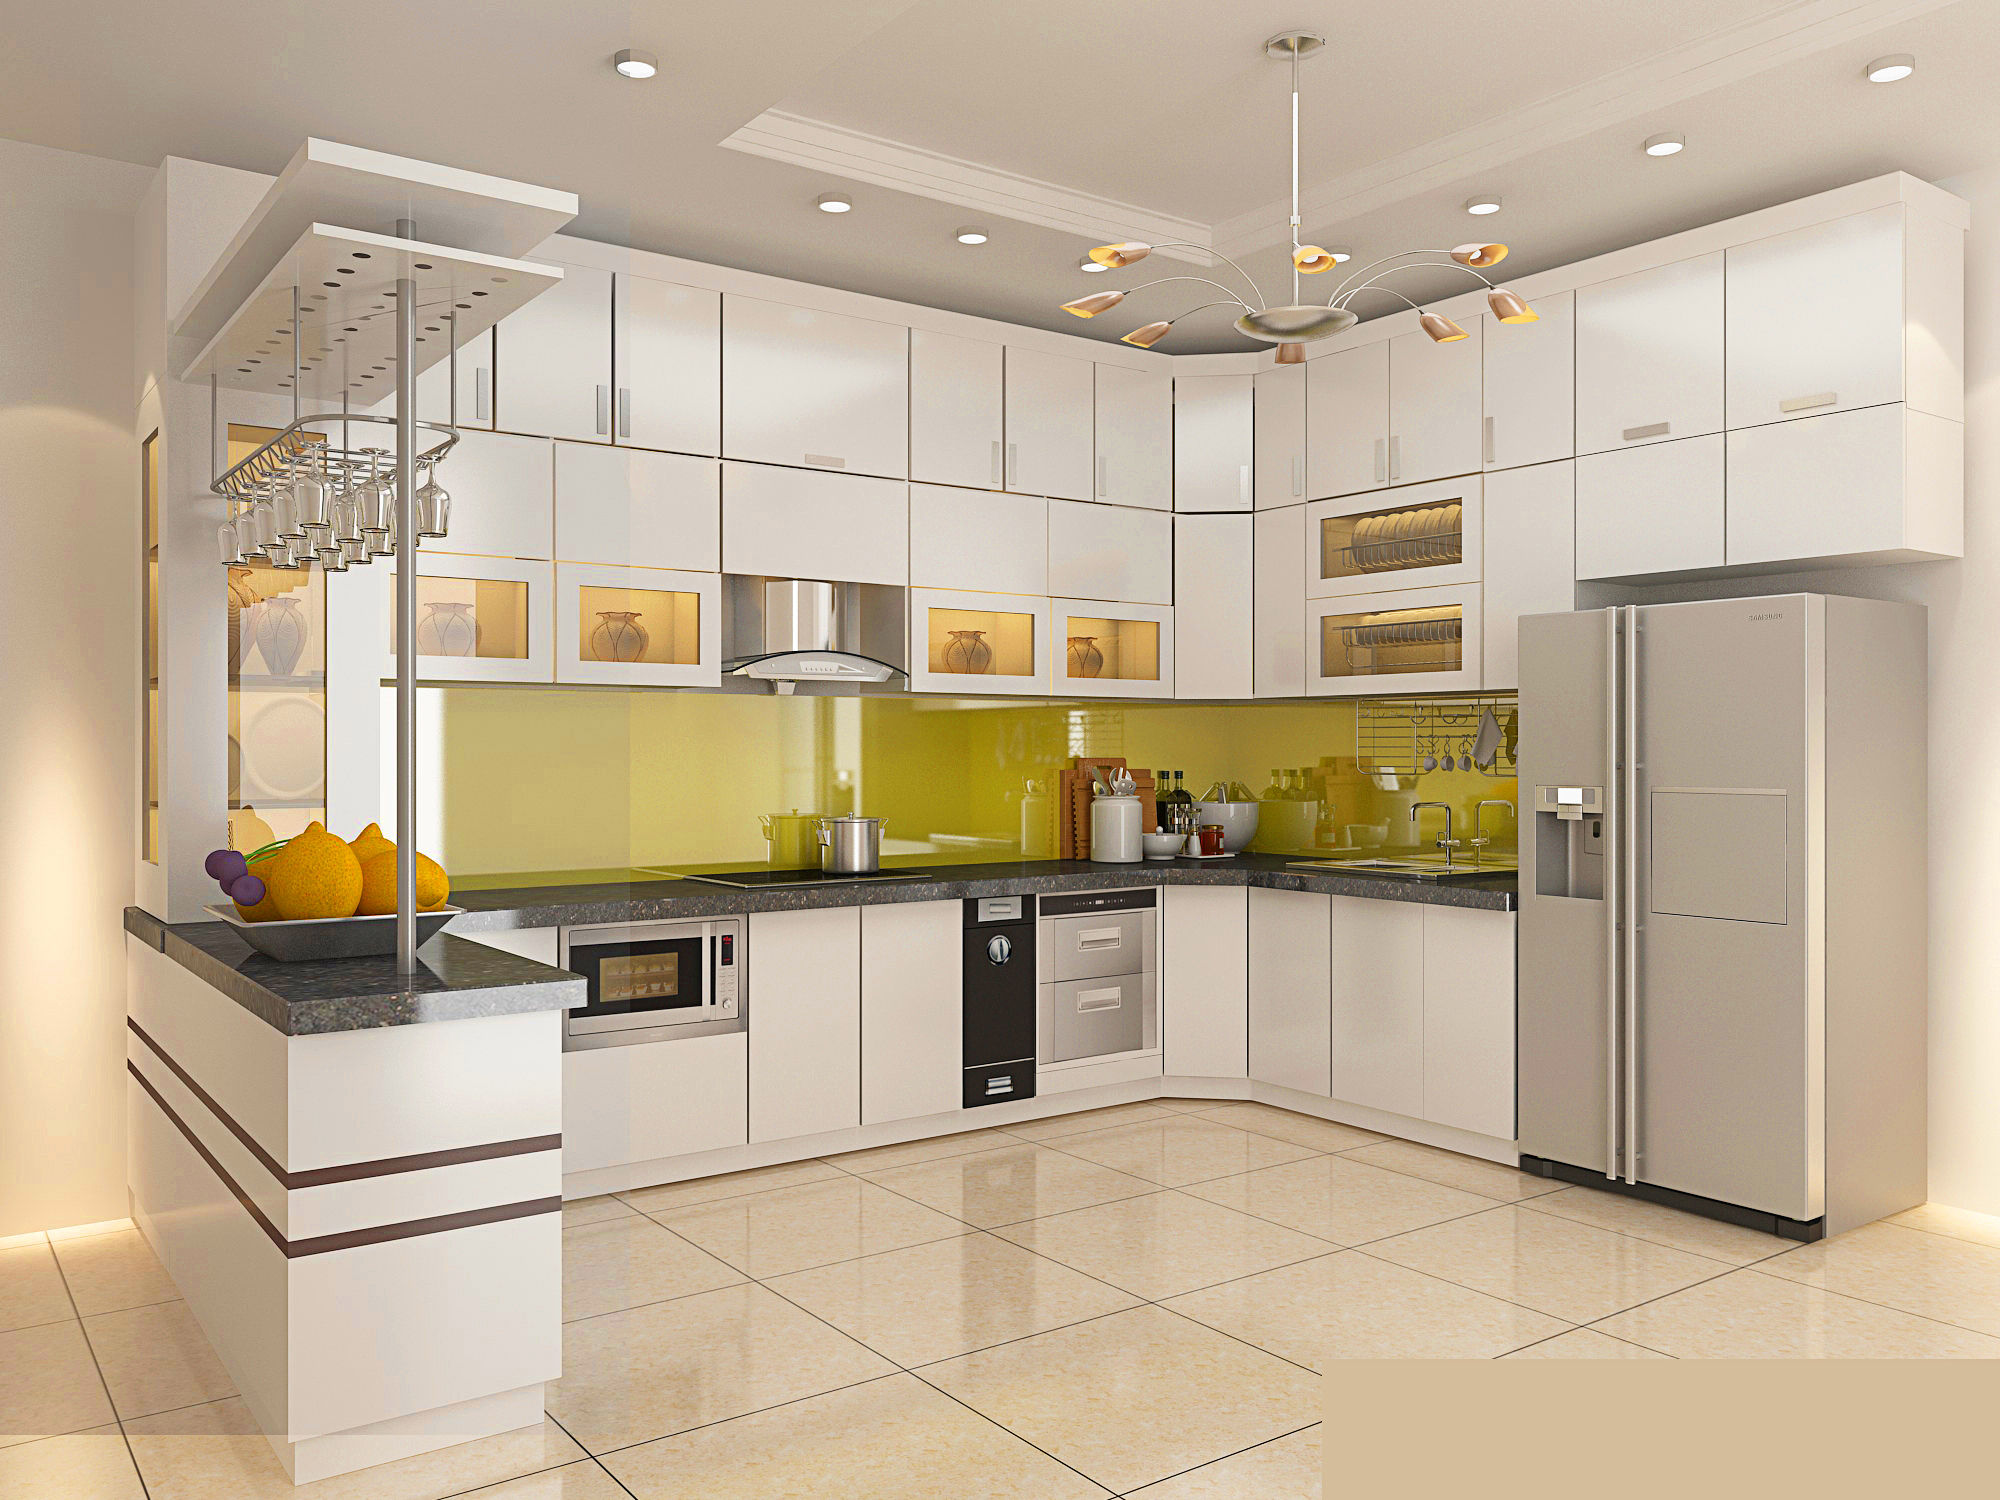 Thiết bị nhà bếp cao cấp có thể mang lại cho bạn nhiều bất ngờ và tiện lợi trên không gian nấu nướng của bạn. Hãy ngắm nhìn những hình ảnh liên quan đến thiết bị nhà bếp cao cấp để thấy được sự đa dạng và chất lượng của chúng.